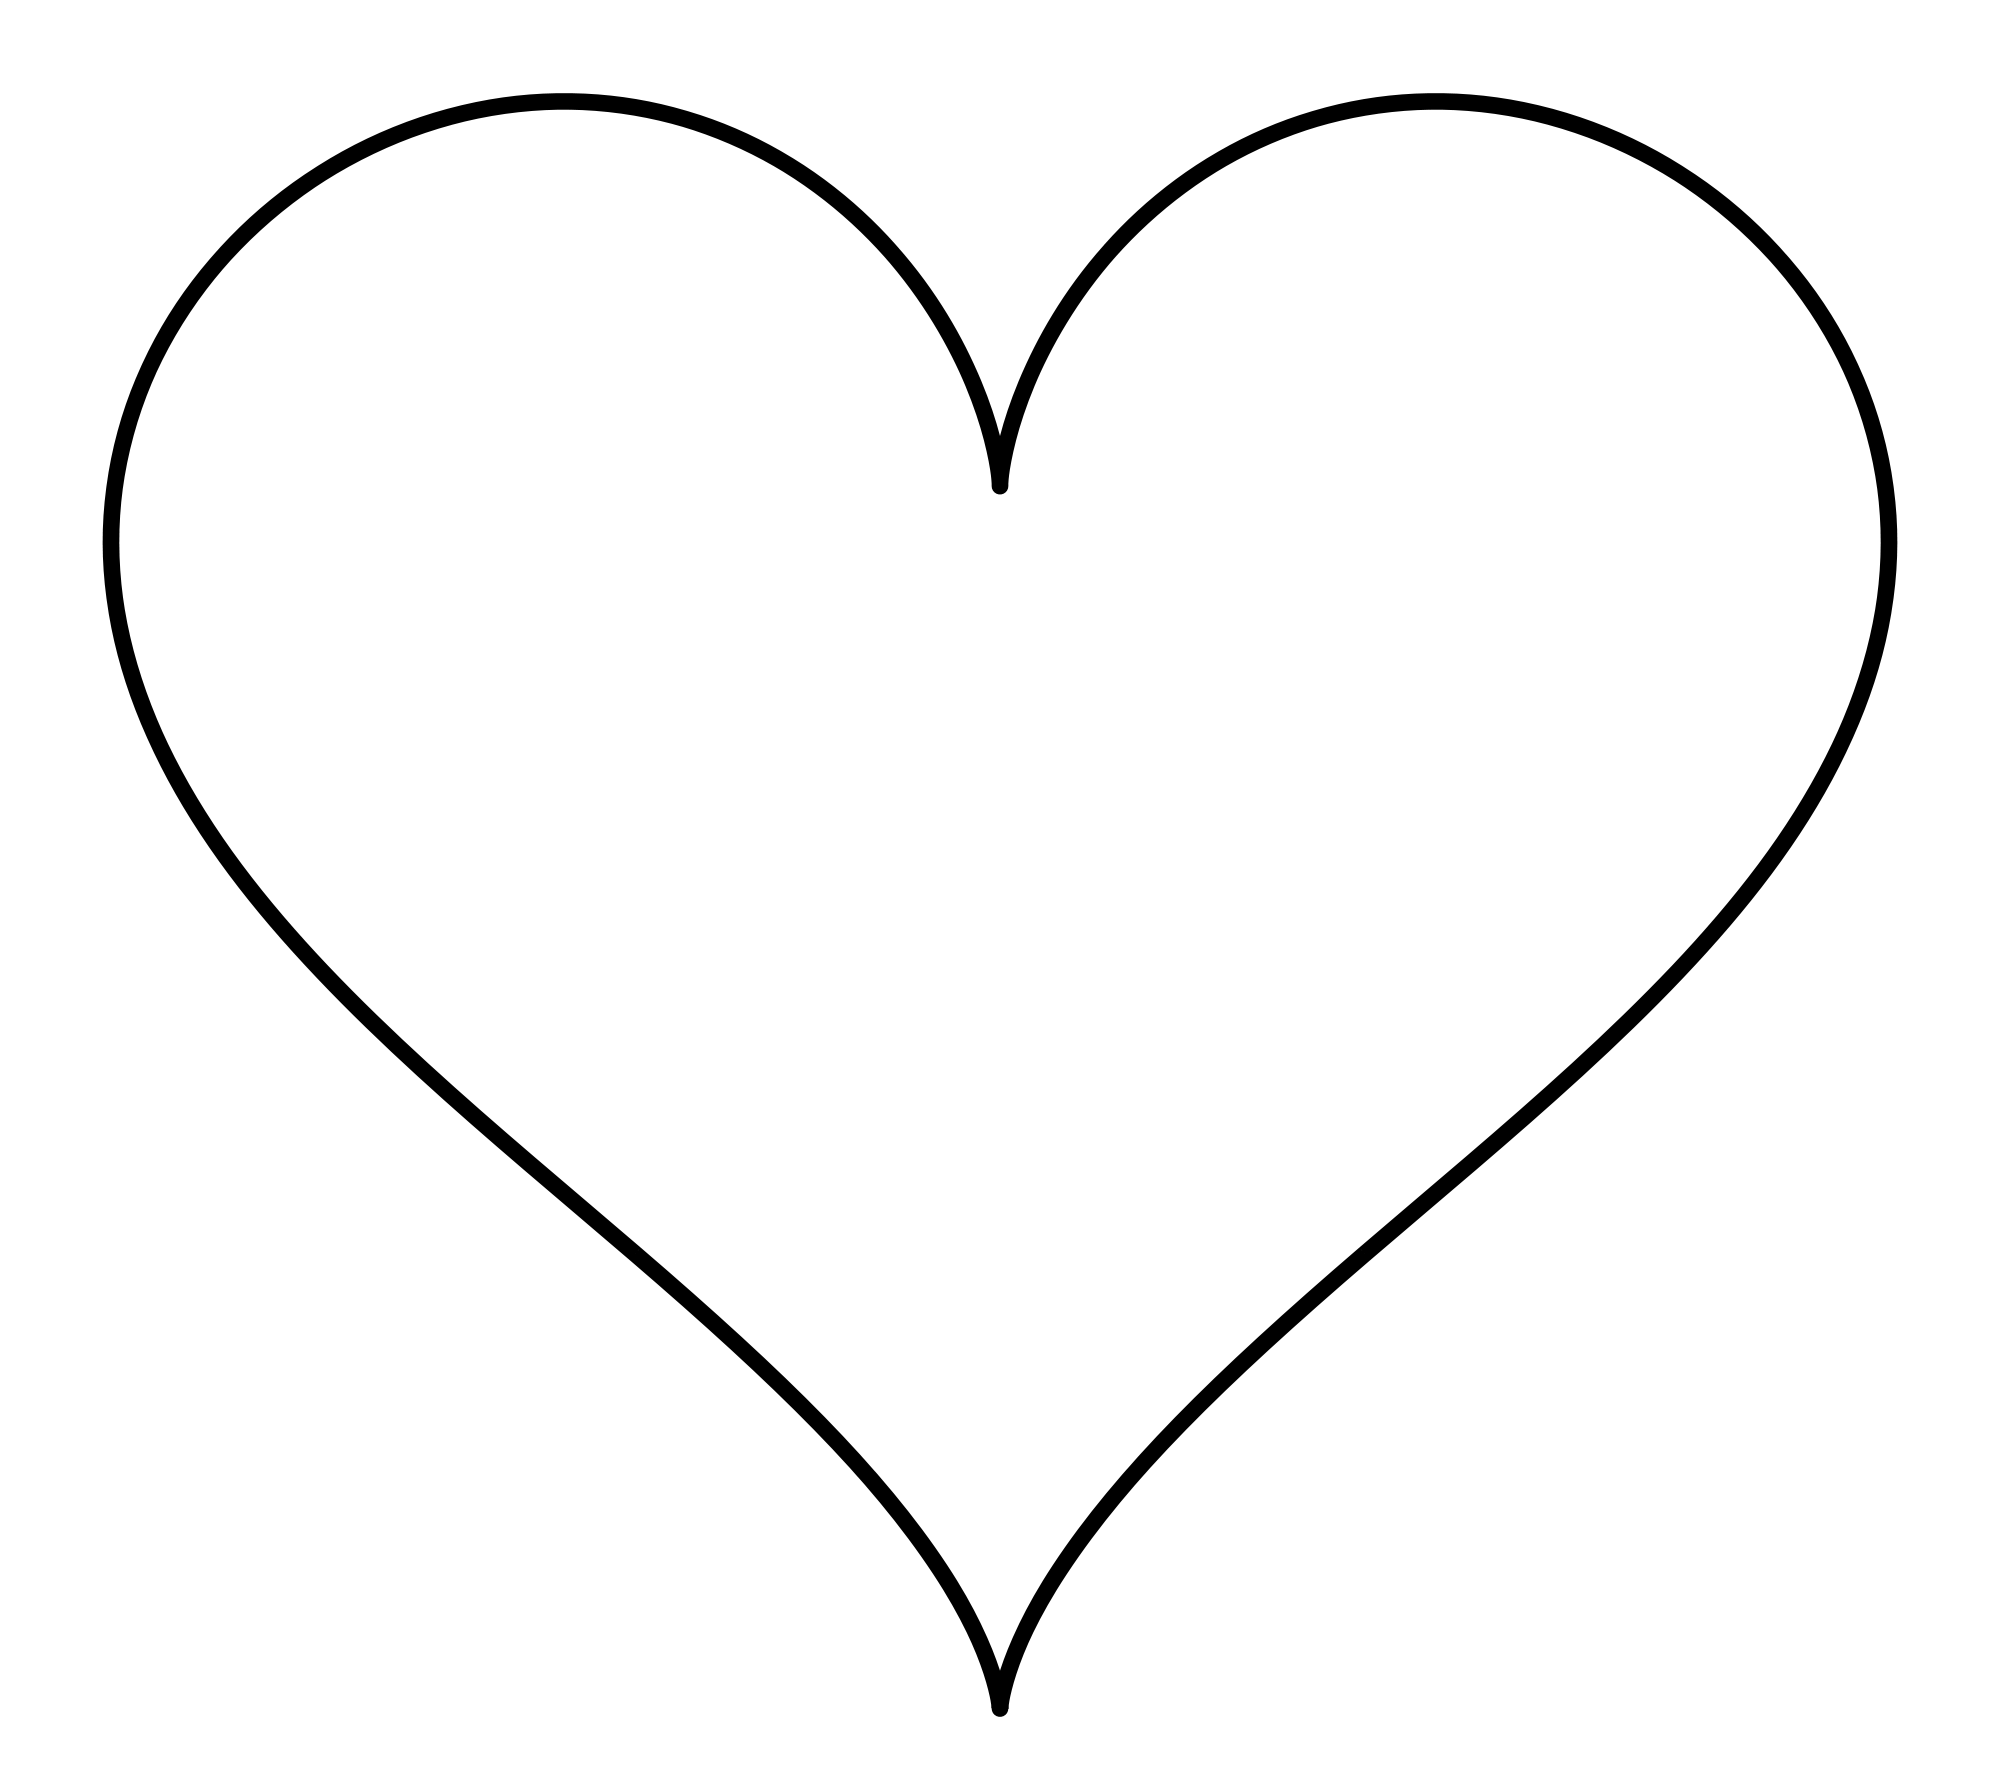 Heart (symbol) - Wikipedia, the free encyclopedia